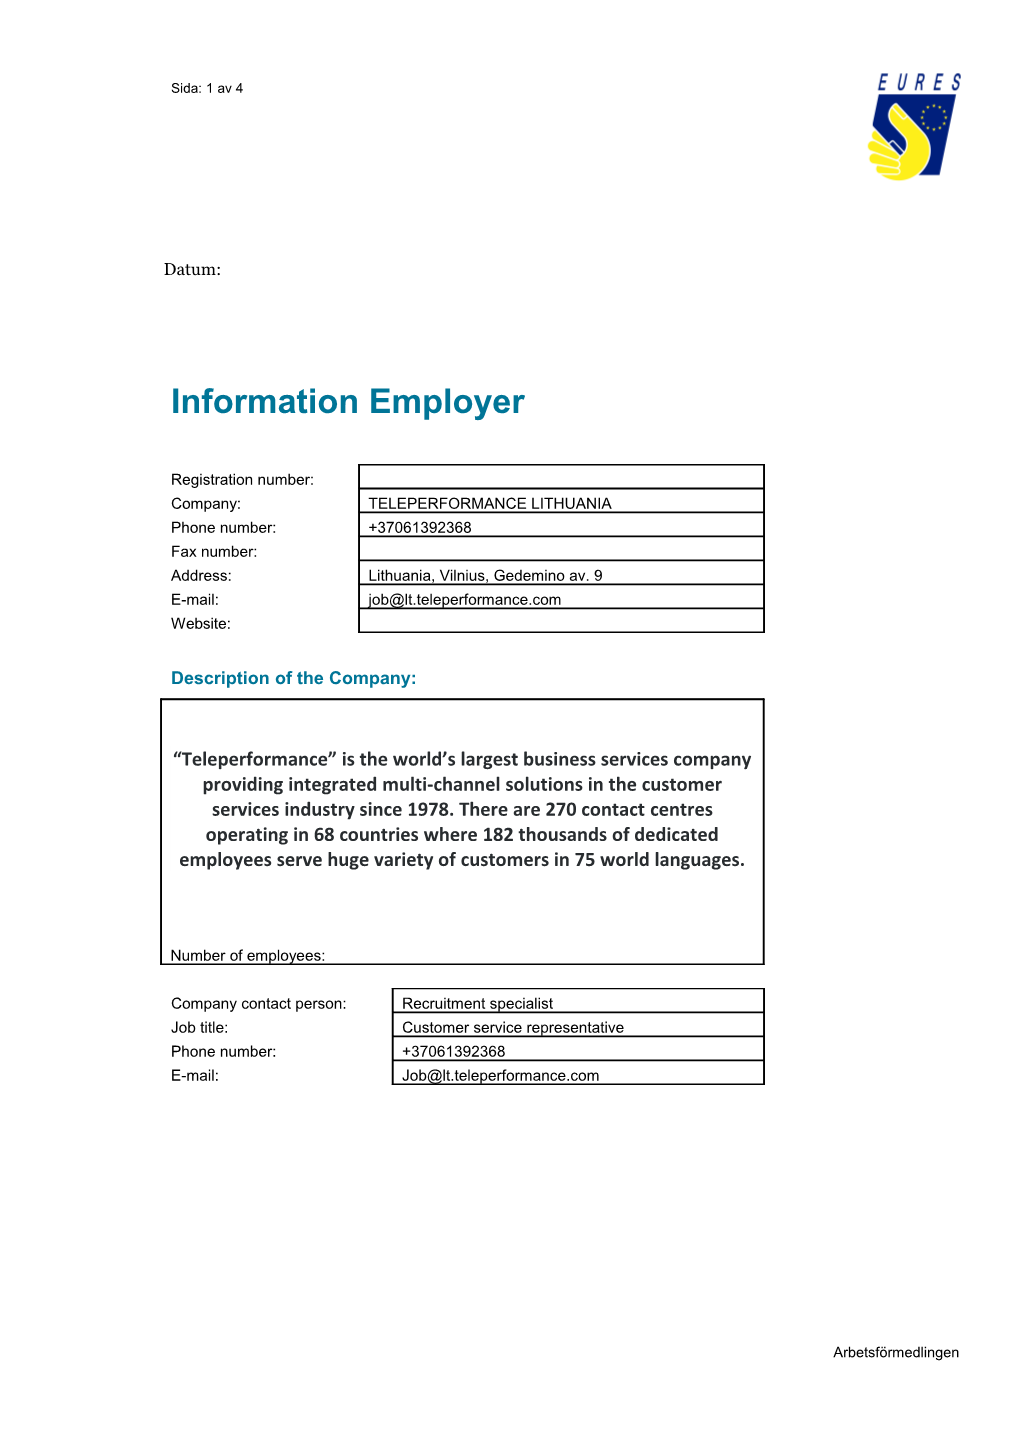 Information Employer